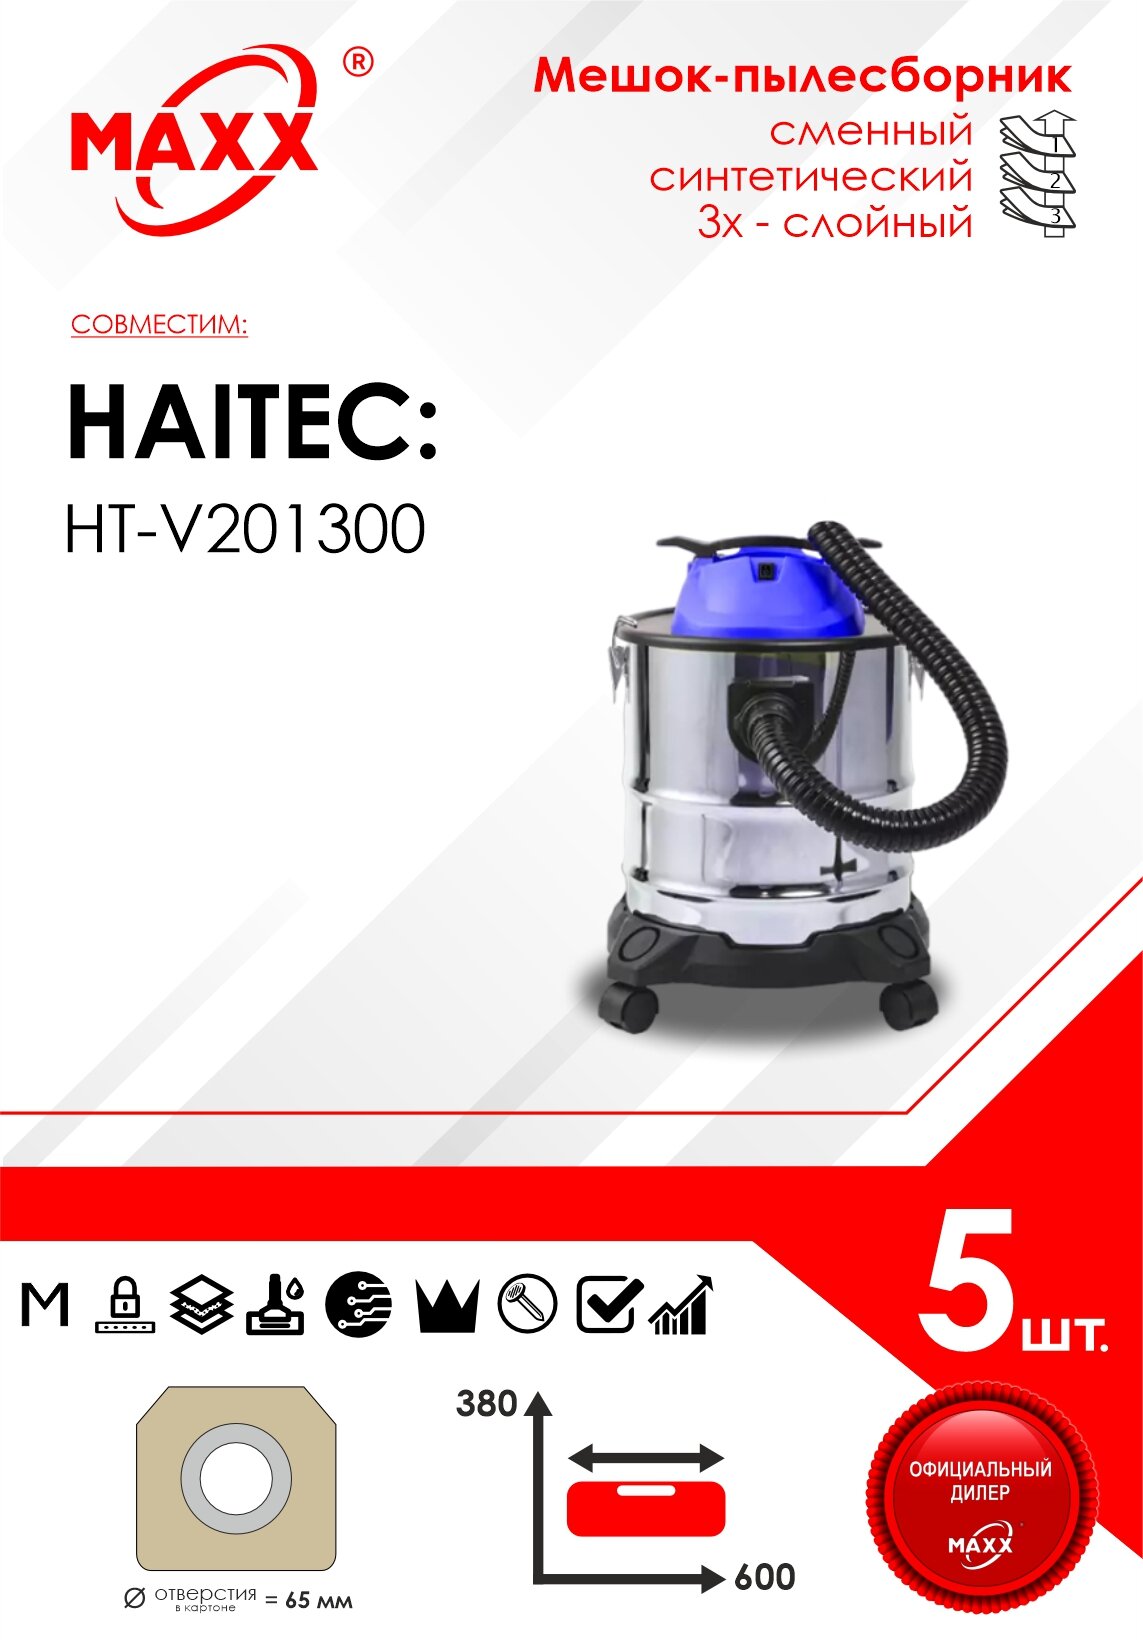 Мешок - пылесборник 5 шт. для пылесоса Haitec HT-V201300